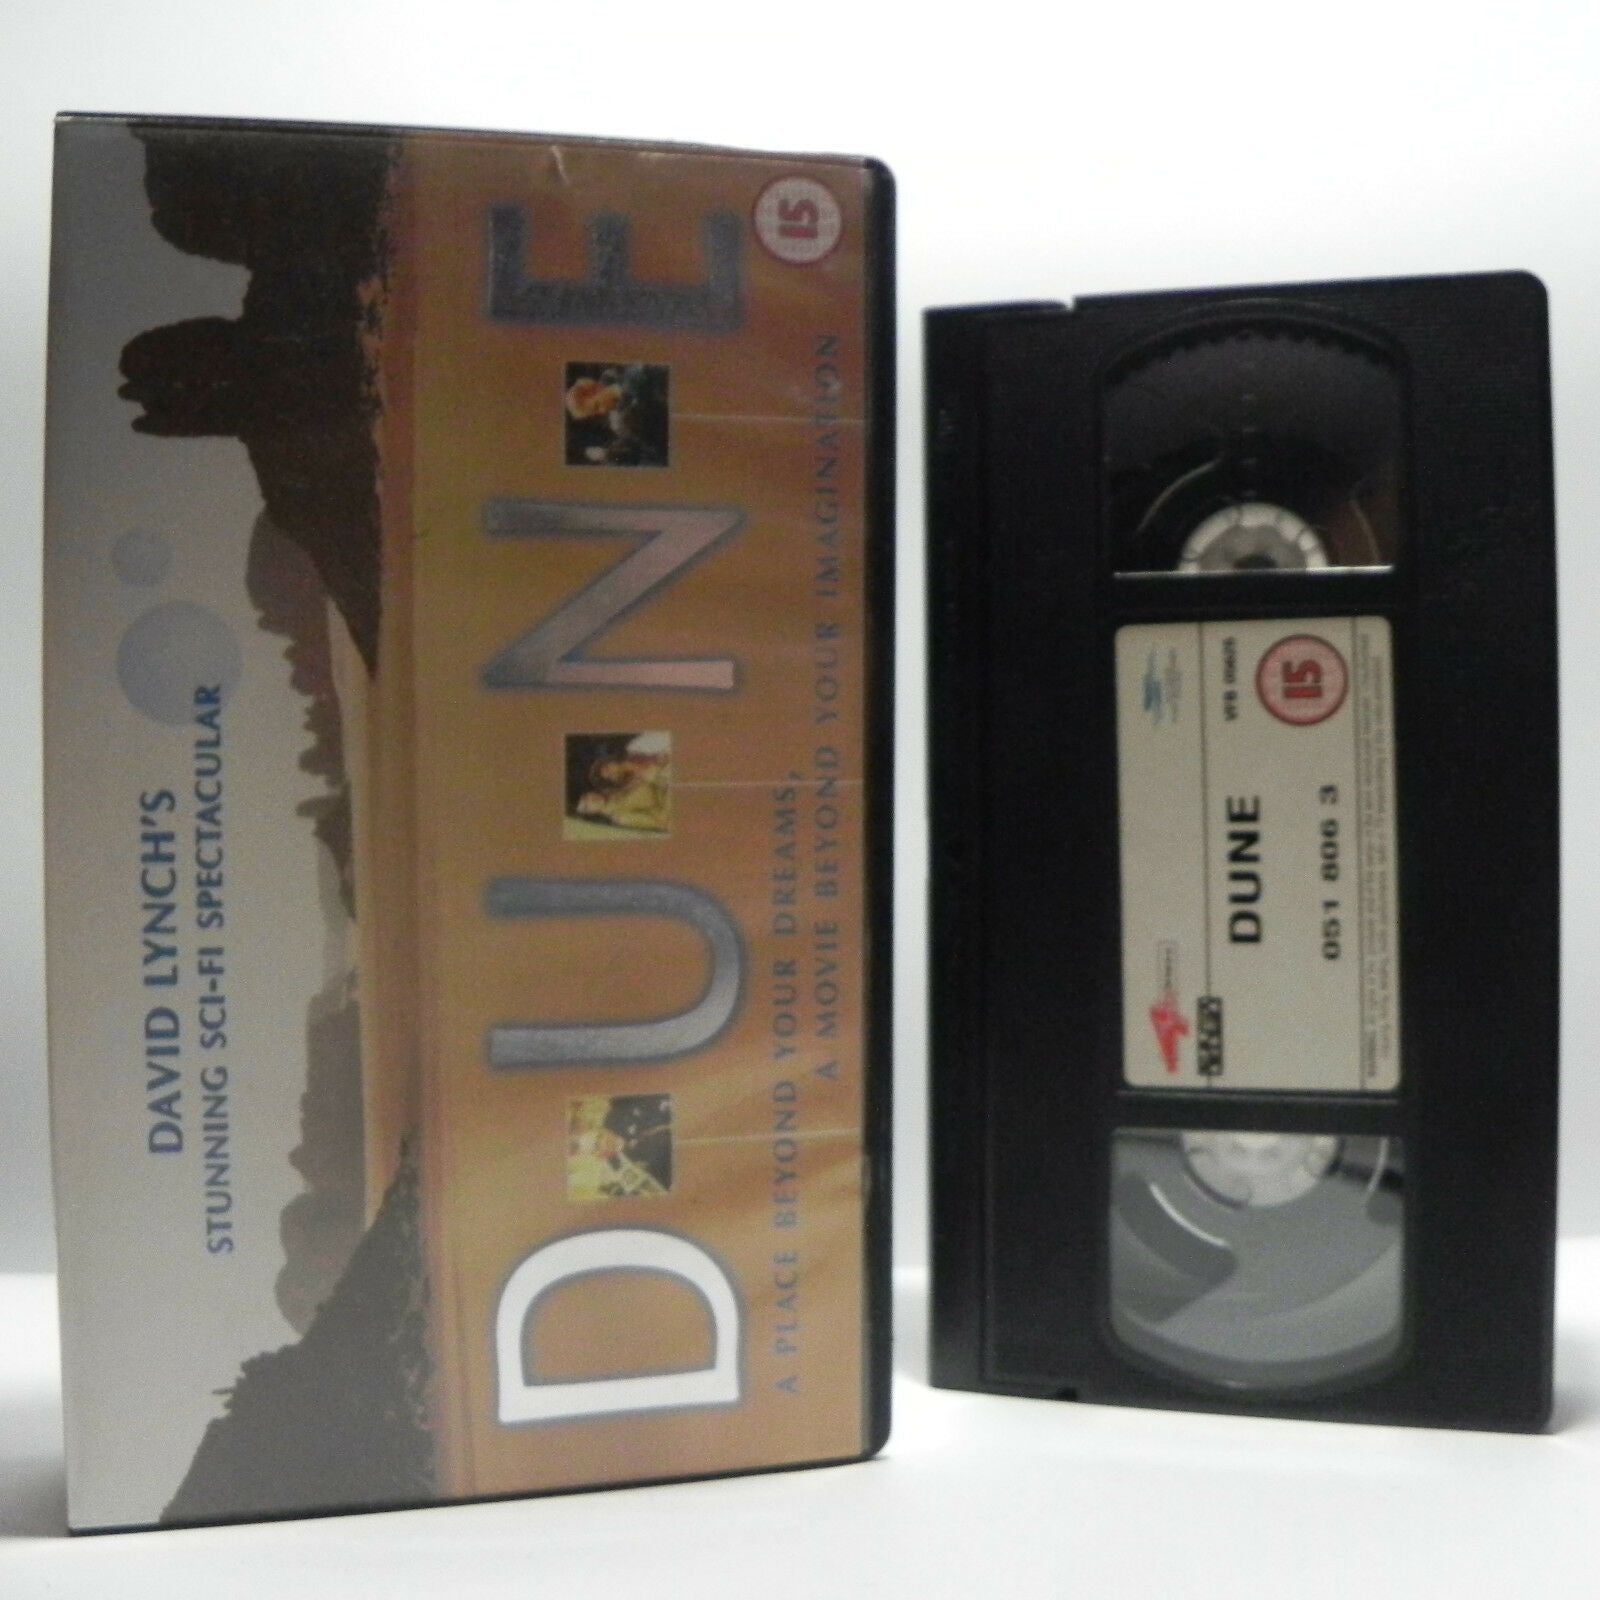 DUNE: Action Sci-Fi - David Lynch, Based on (1965) Frank Herbert Novel - Pal VHS-